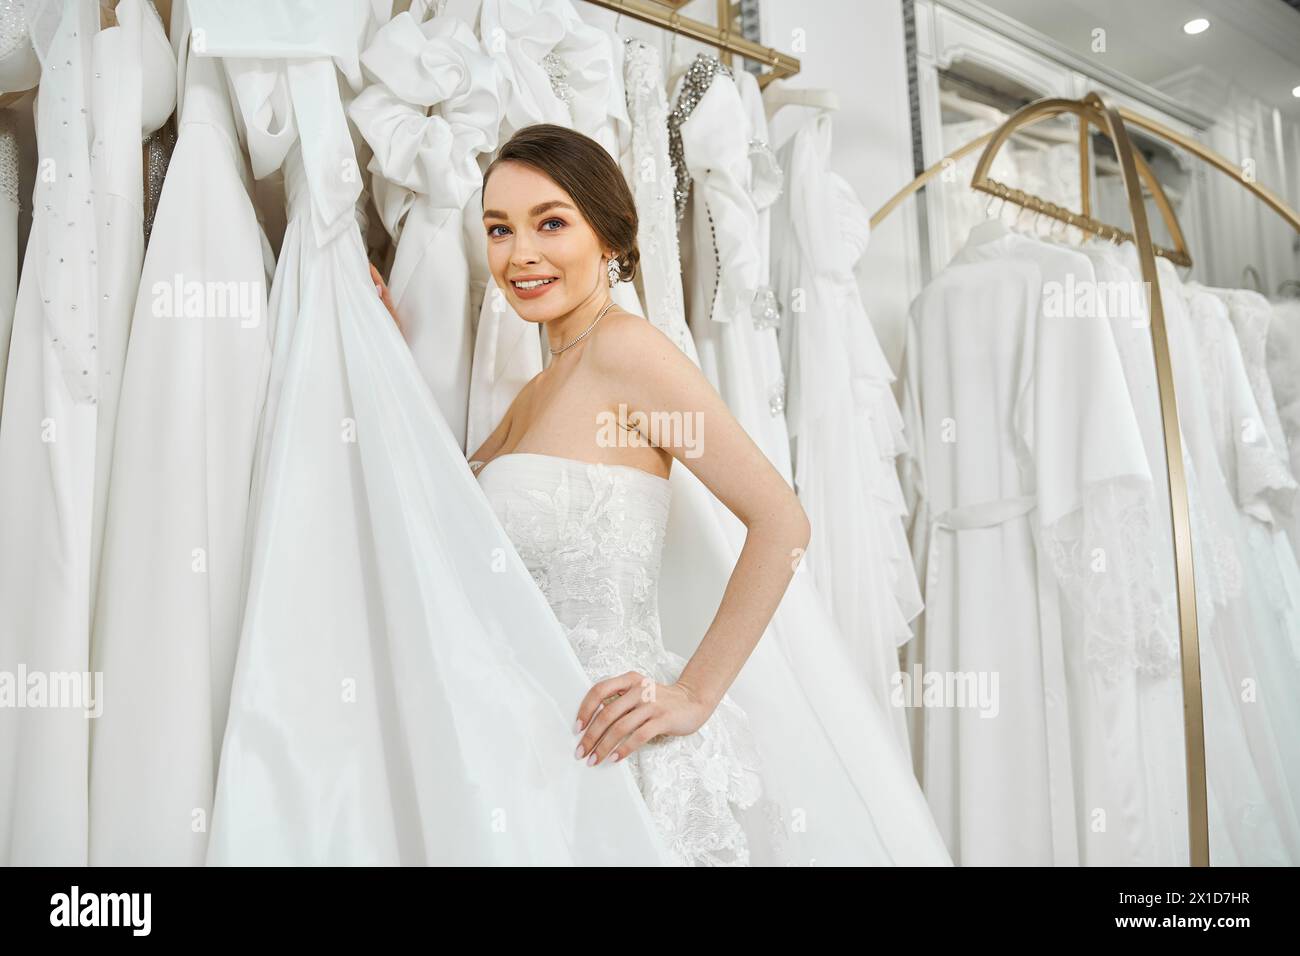 Eine junge brünette Braut steht vor einem Regal mit weißen Kleidern und wählt sorgfältig ihr perfektes Hochzeitskleid aus. Stockfoto